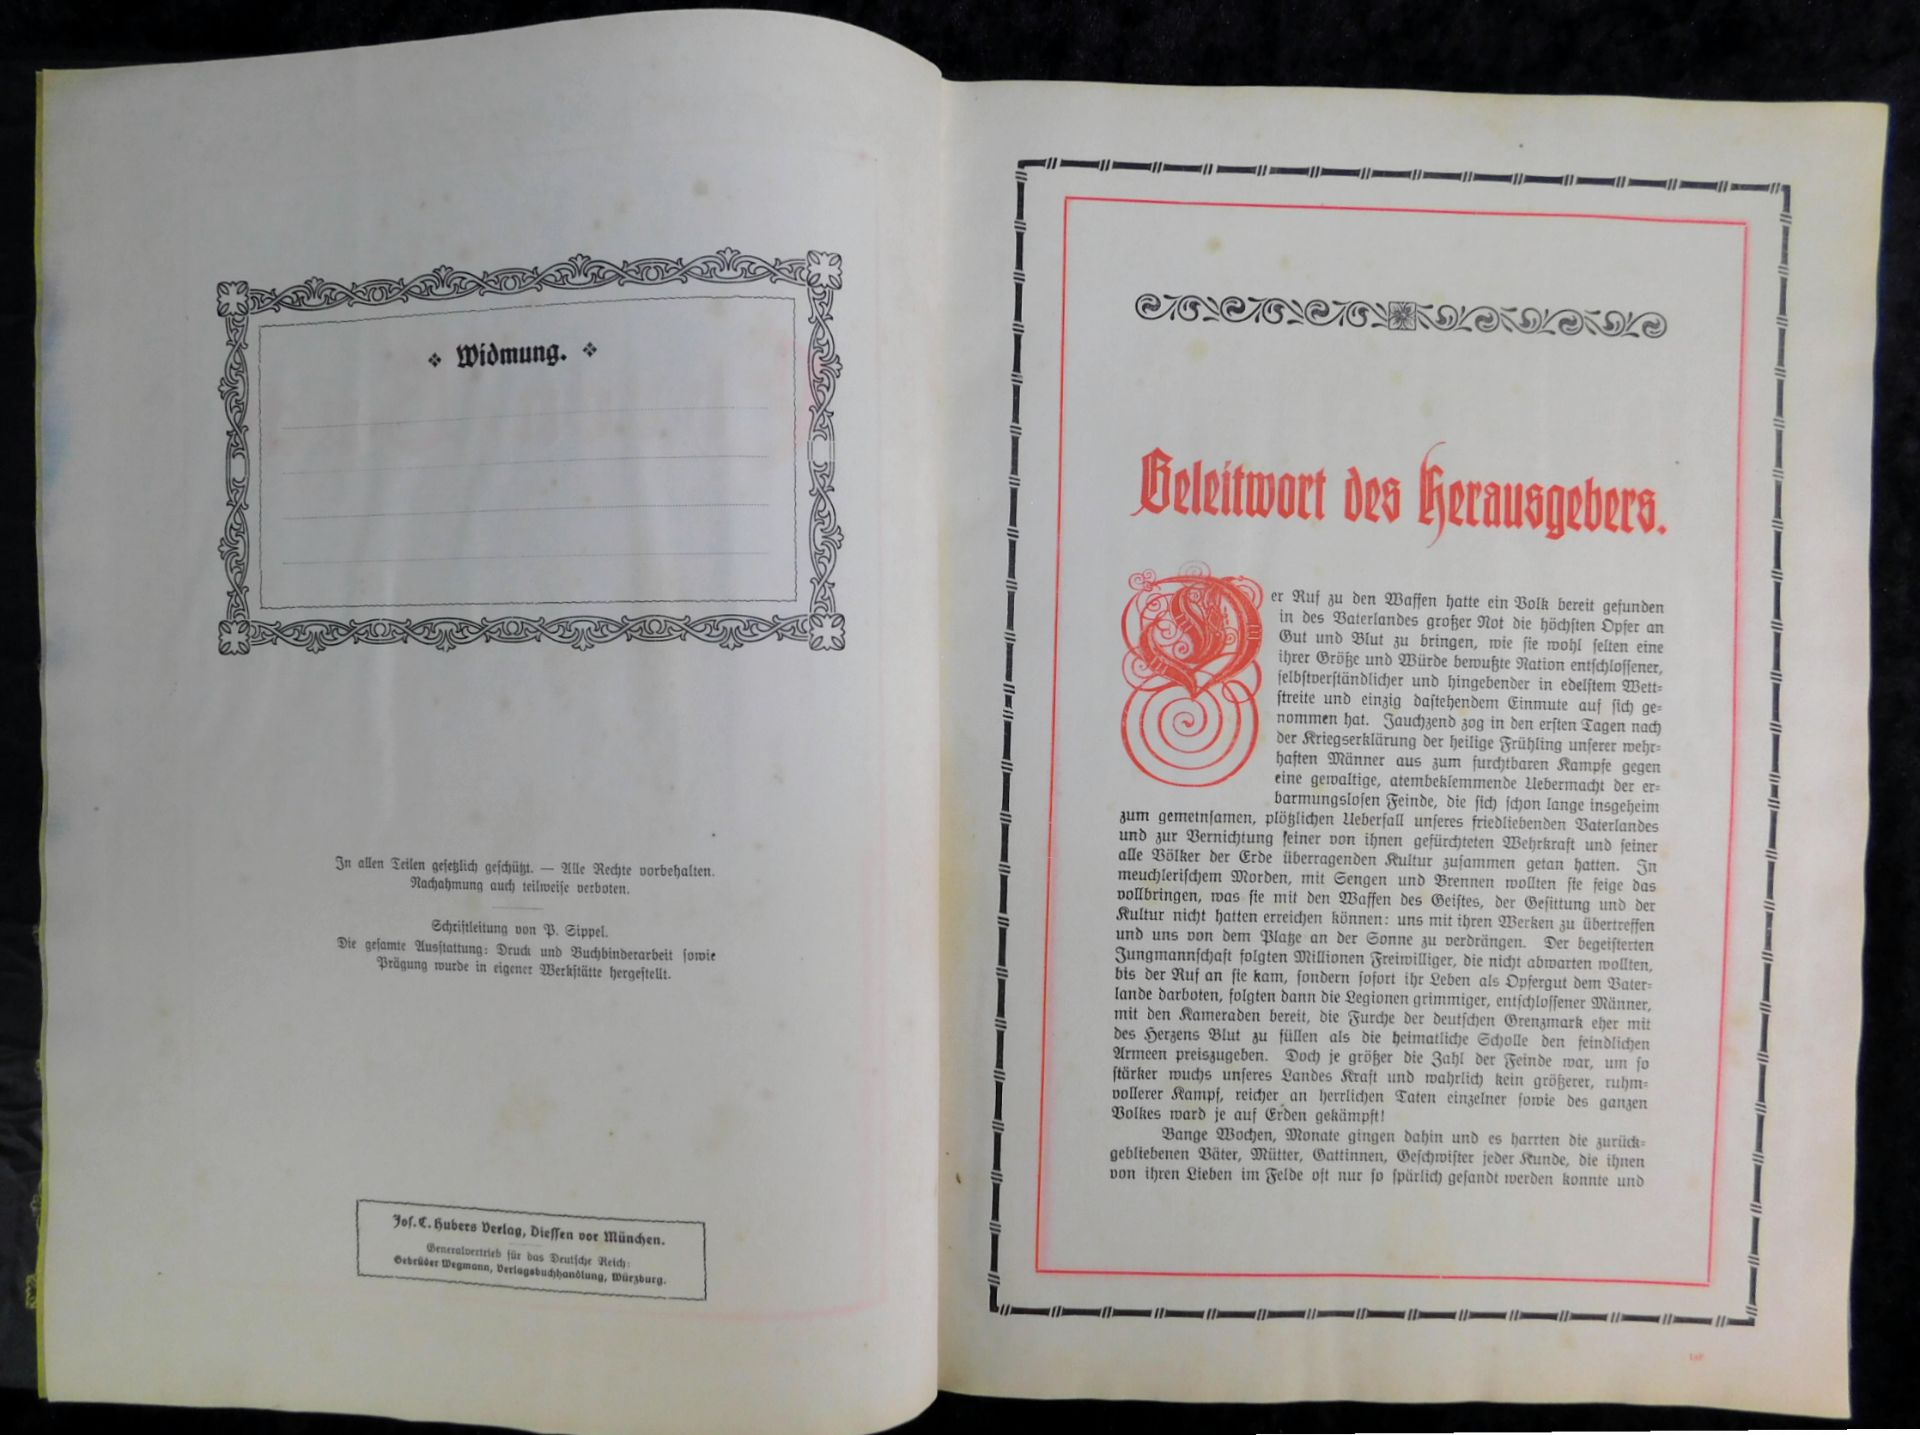 Großes Ehrenbuch 1914, Familienstammbuch, Verlag Joh.E.Hubens, Diessen/München - Bild 3 aus 7